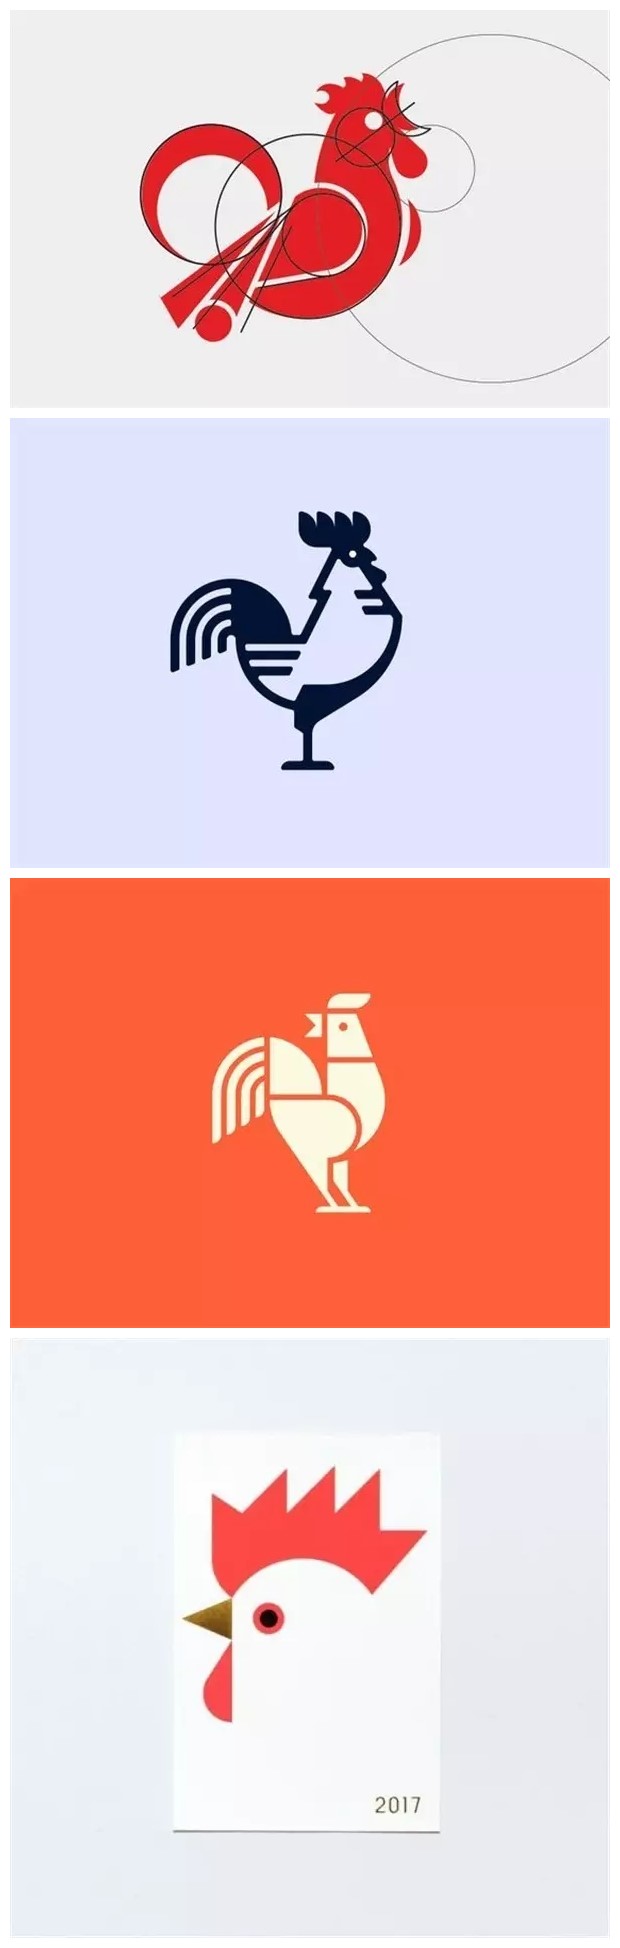 以鸡为元素的logo设计欣赏